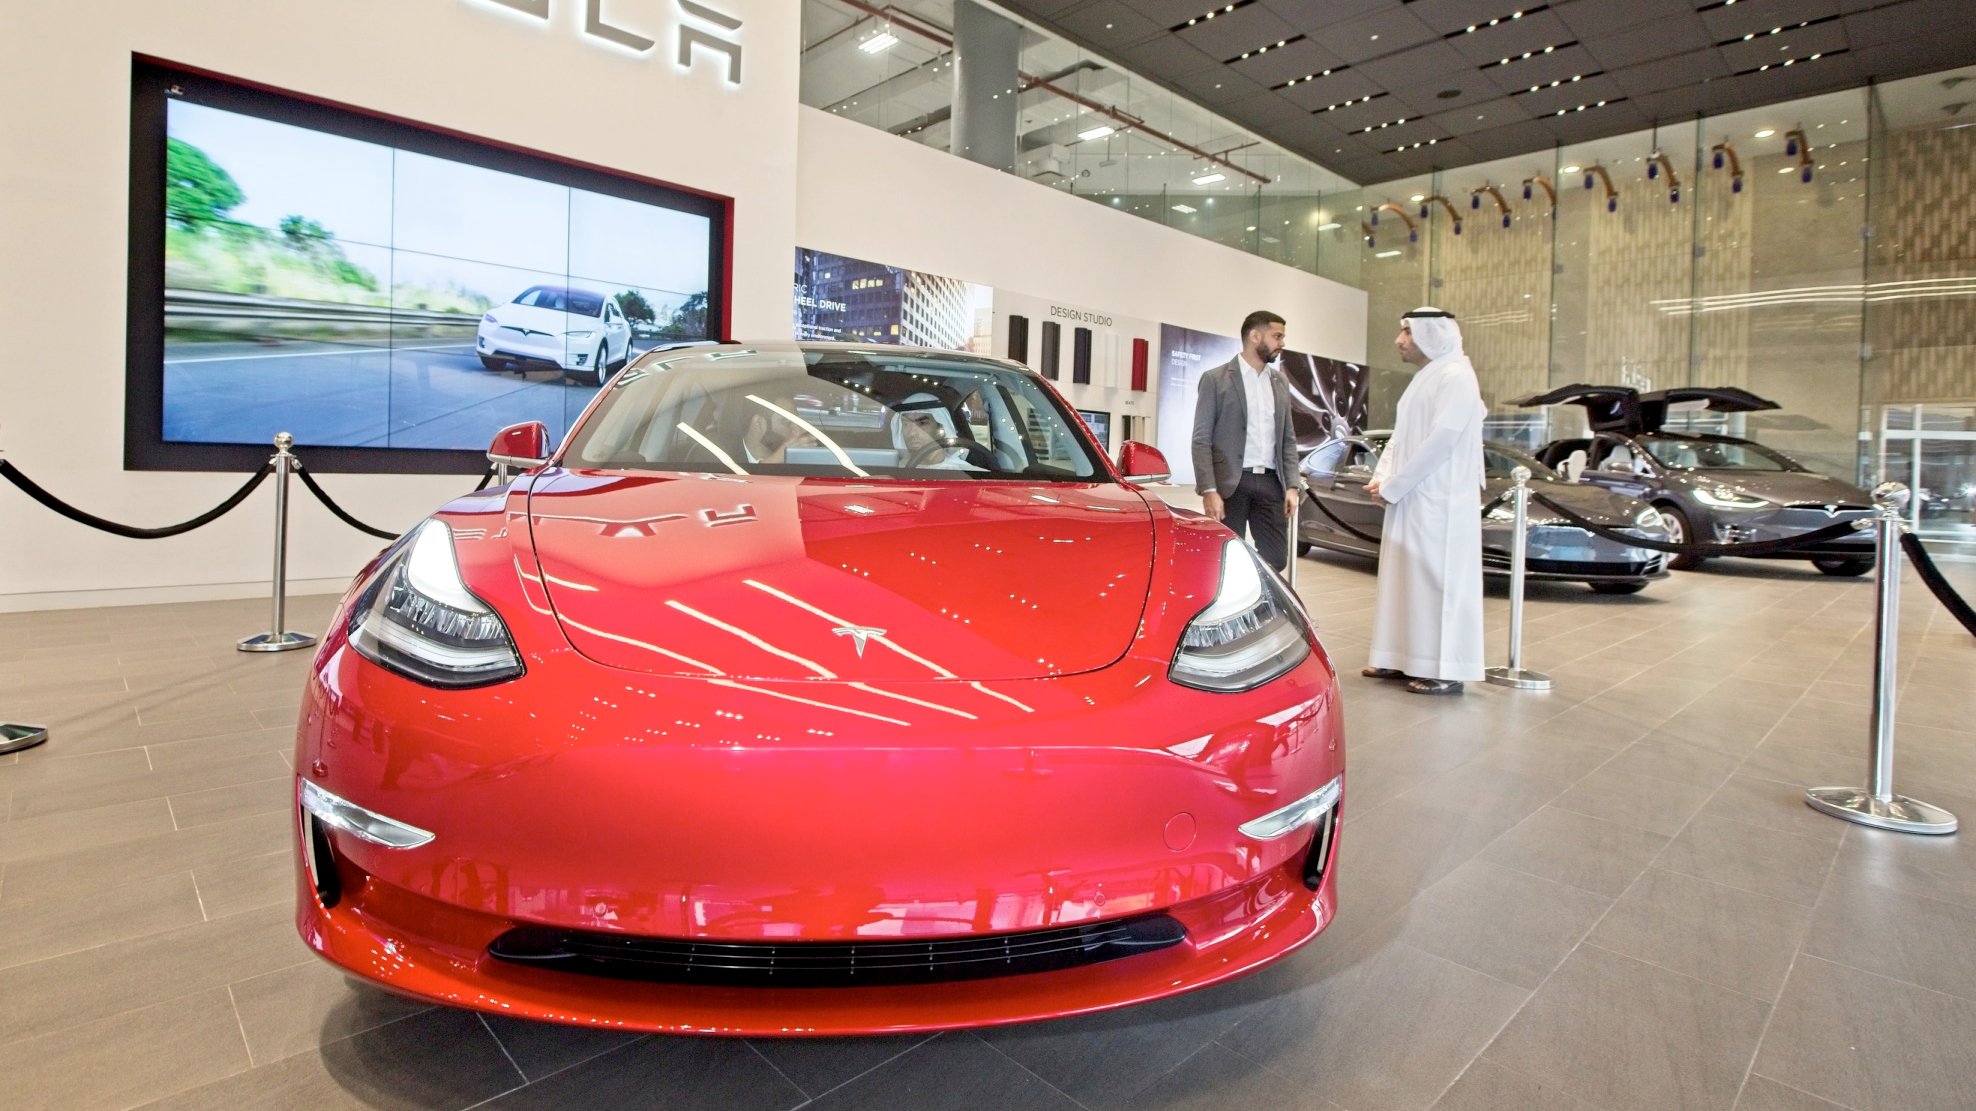 Tesla Model 3 makes its debut in Dubai, UAE | TechRadar - Does Tesla Offer Black Friday Deals